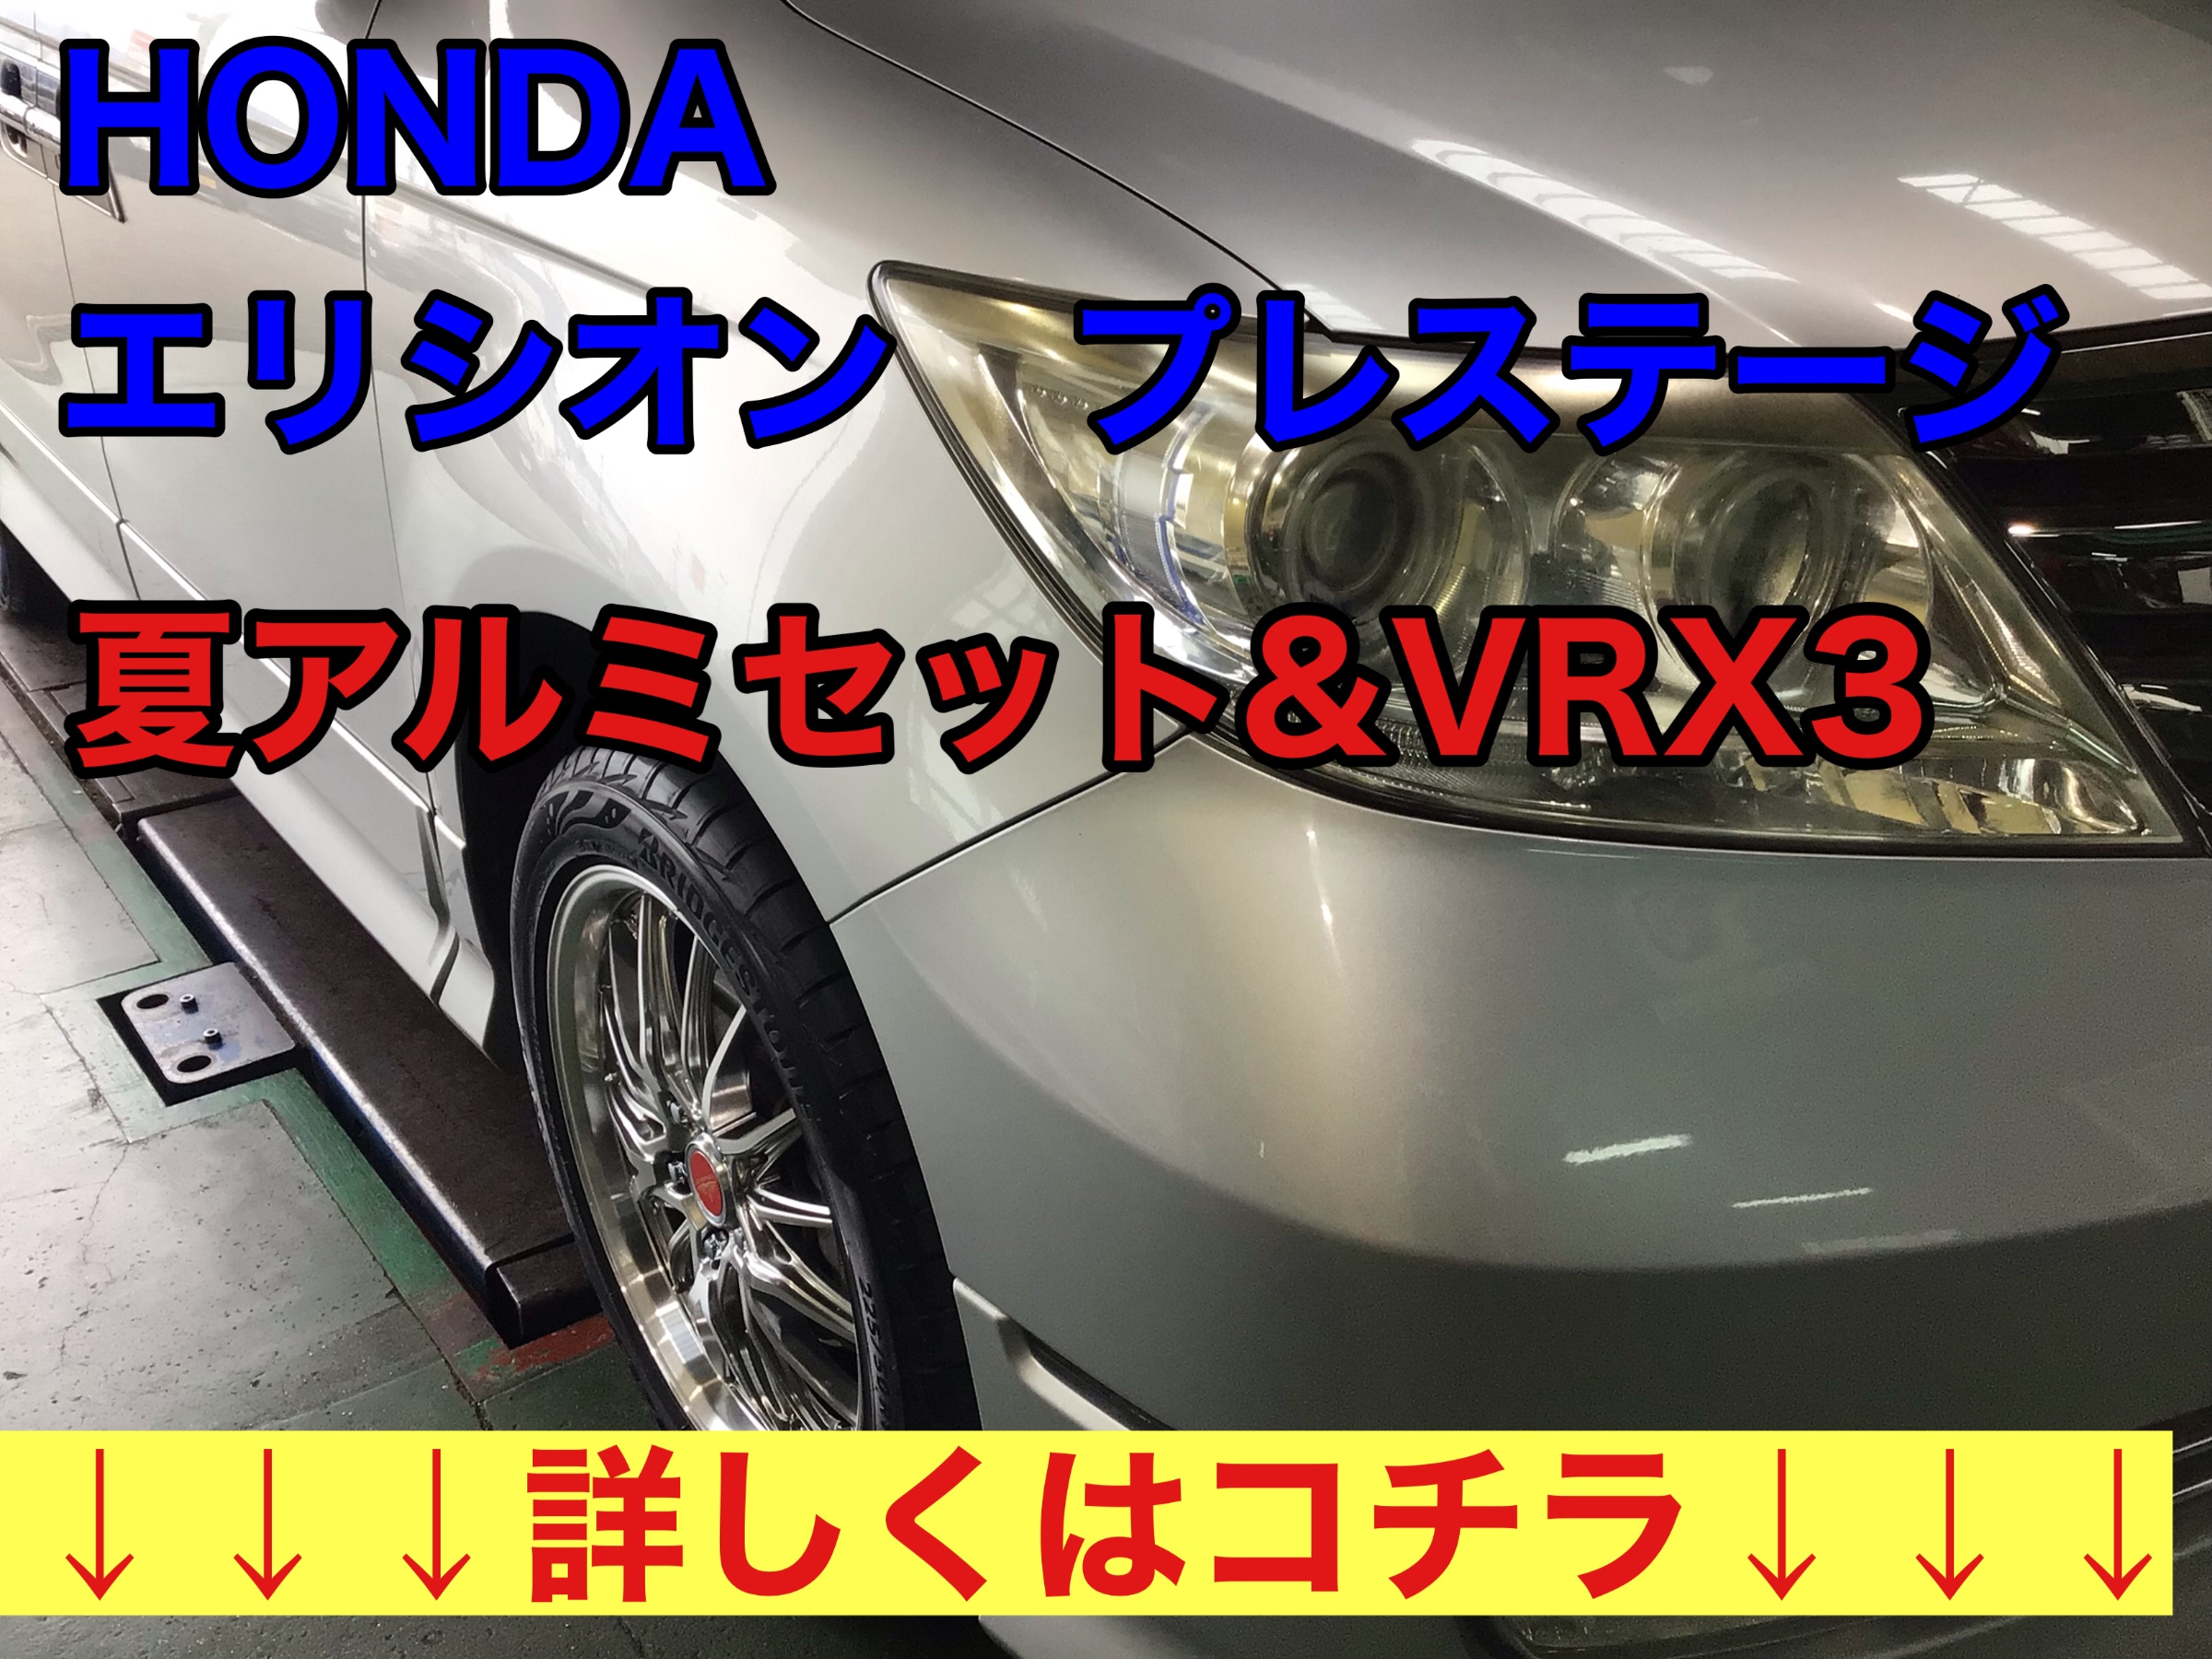 『HONDA エリシオンプレステージ』タイヤ交換です。 | ホンダ エリシオンプレステージ タイヤ タイヤ・ホイール関連 > タイヤ・ホイール